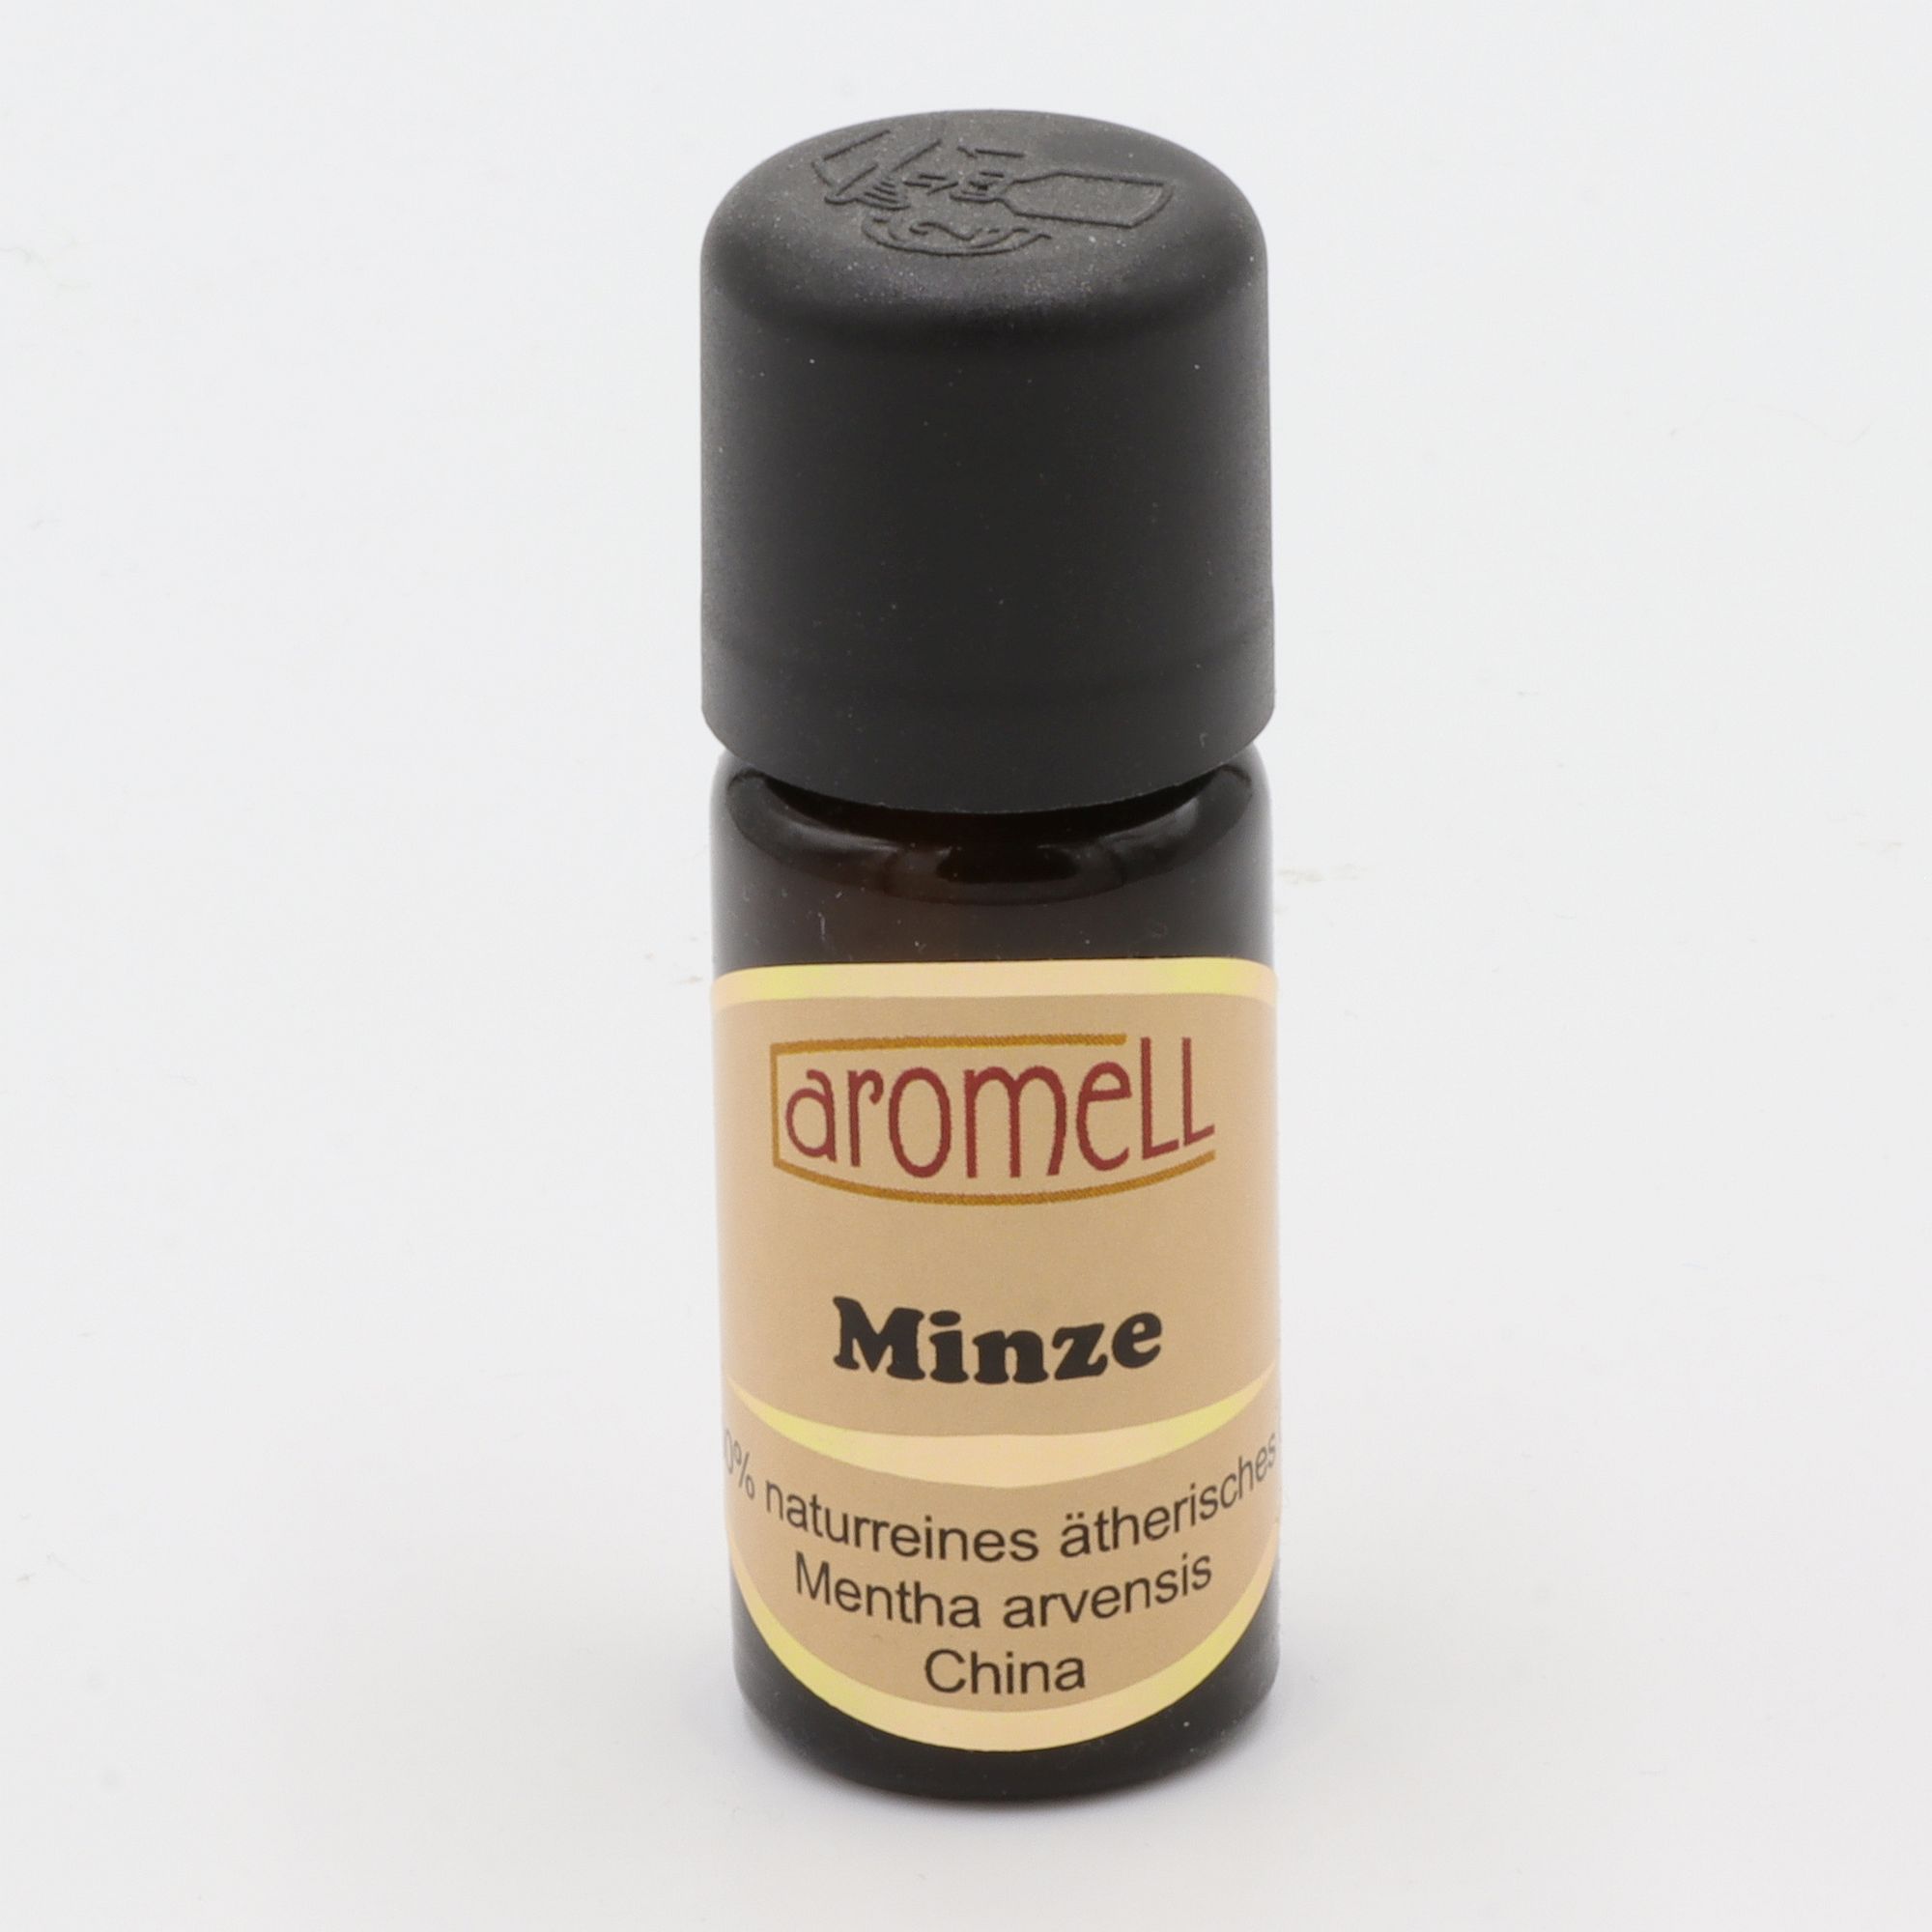 Ätherisches Öl - Aromell - Minze - 100% naturrein - Mentha Arvensis aus China - aromatischer Raumduft für Dein Wohlbefinden - Glas mit Tropfendosierung